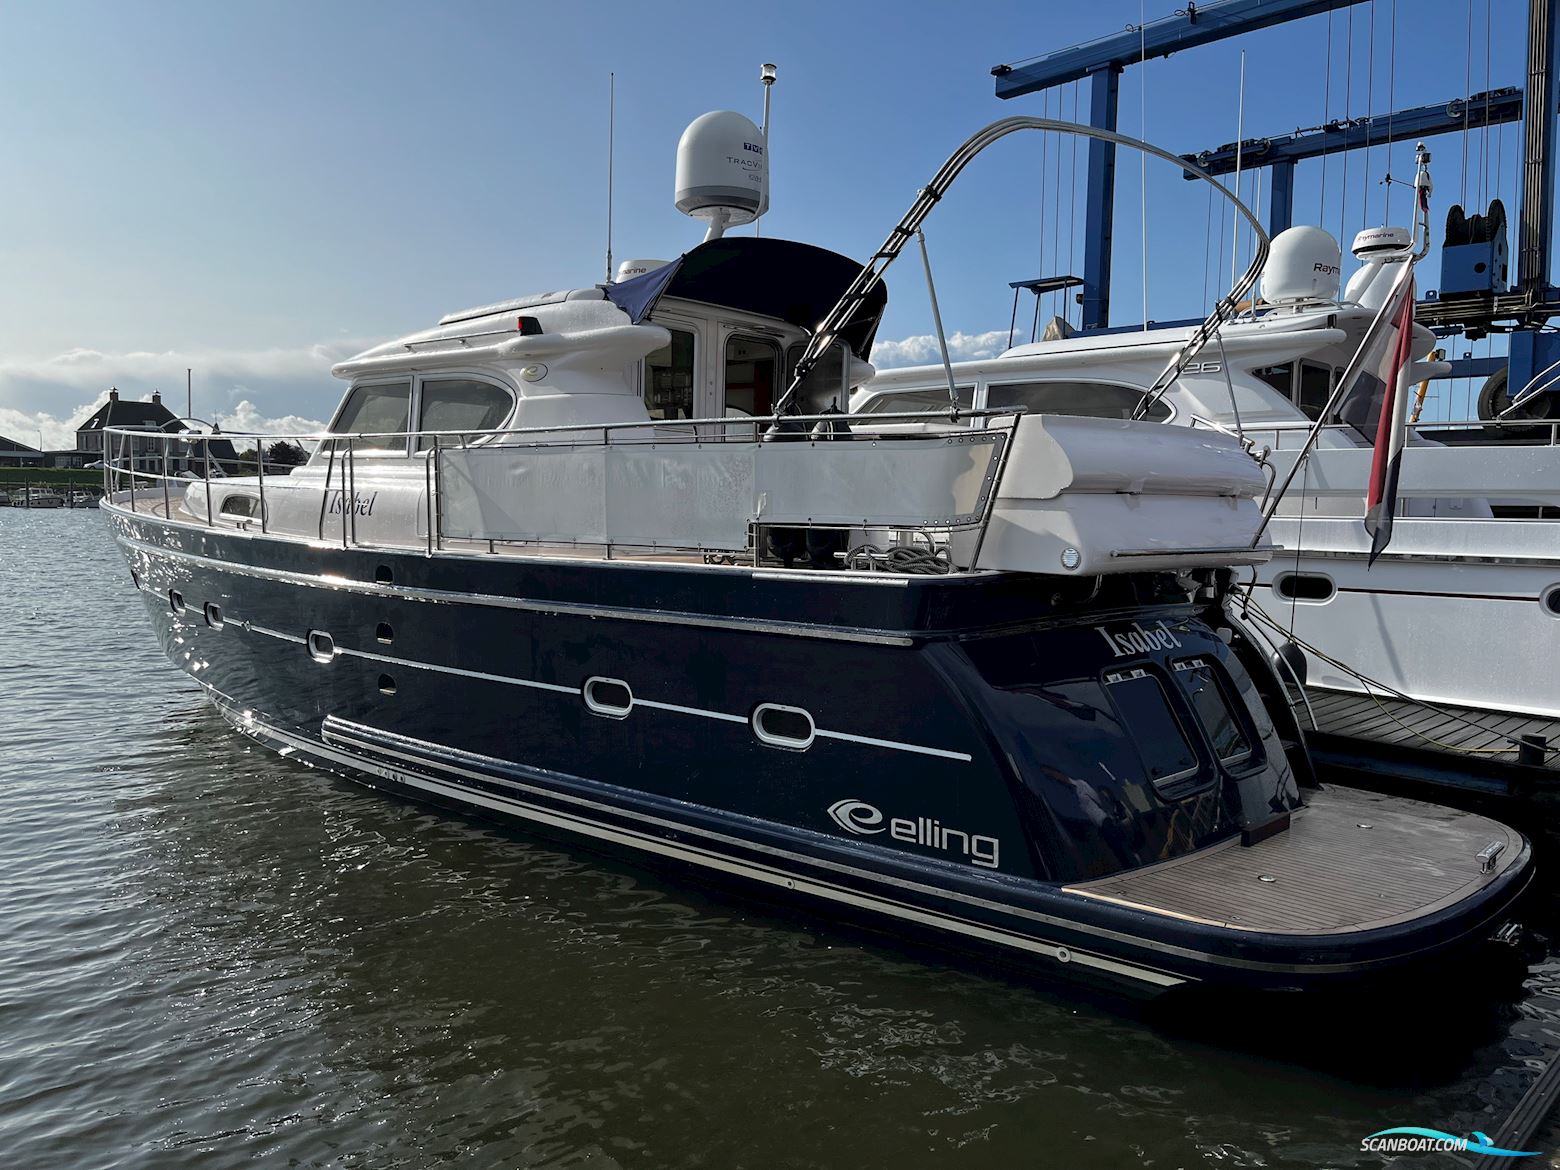 Elling E4 Ultimate (Stabiliser) Motor boat 2019, with Volvo Penta engine, The Netherlands